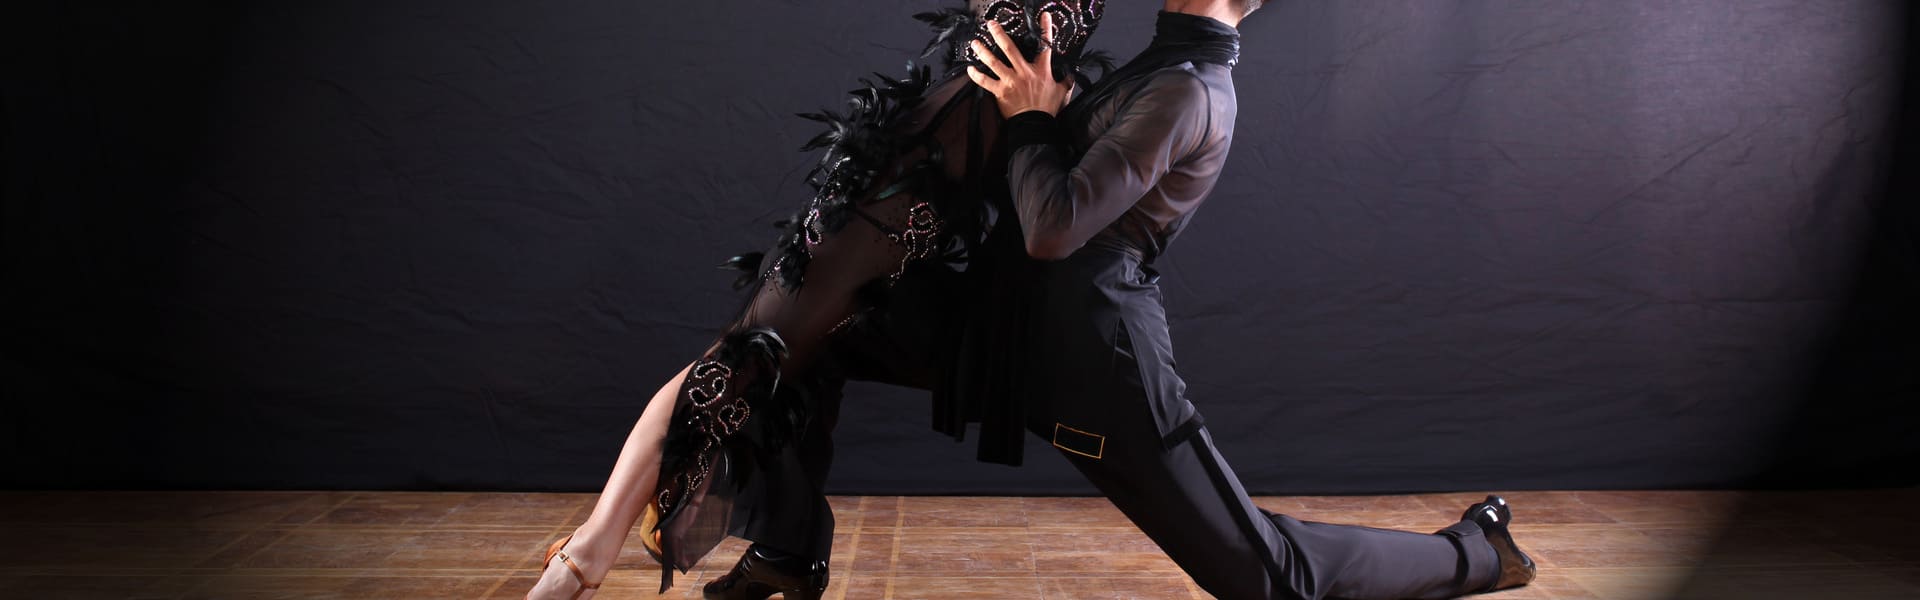 Show de tango en Gala Tango